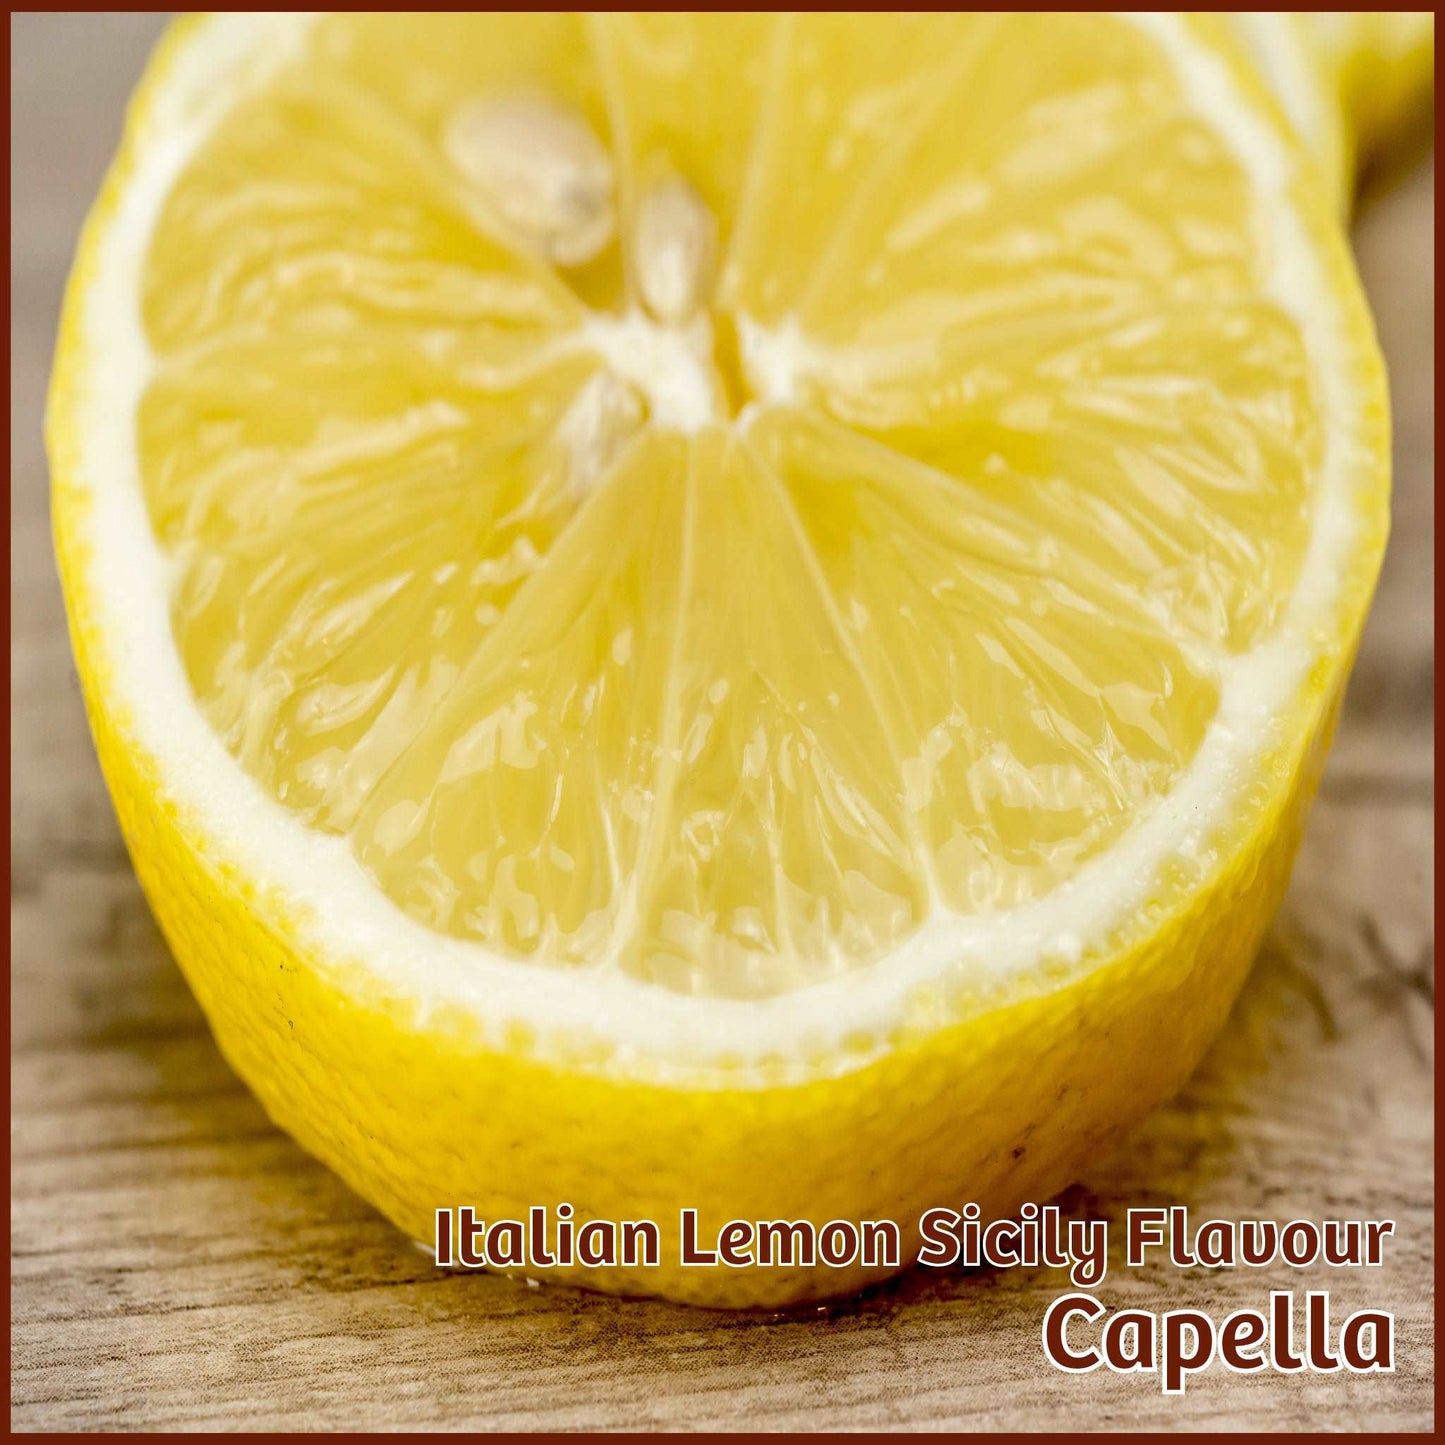 Italian Lemon Sicily Flavour - Capella - Flavour Fog - Canada's flavour depot.